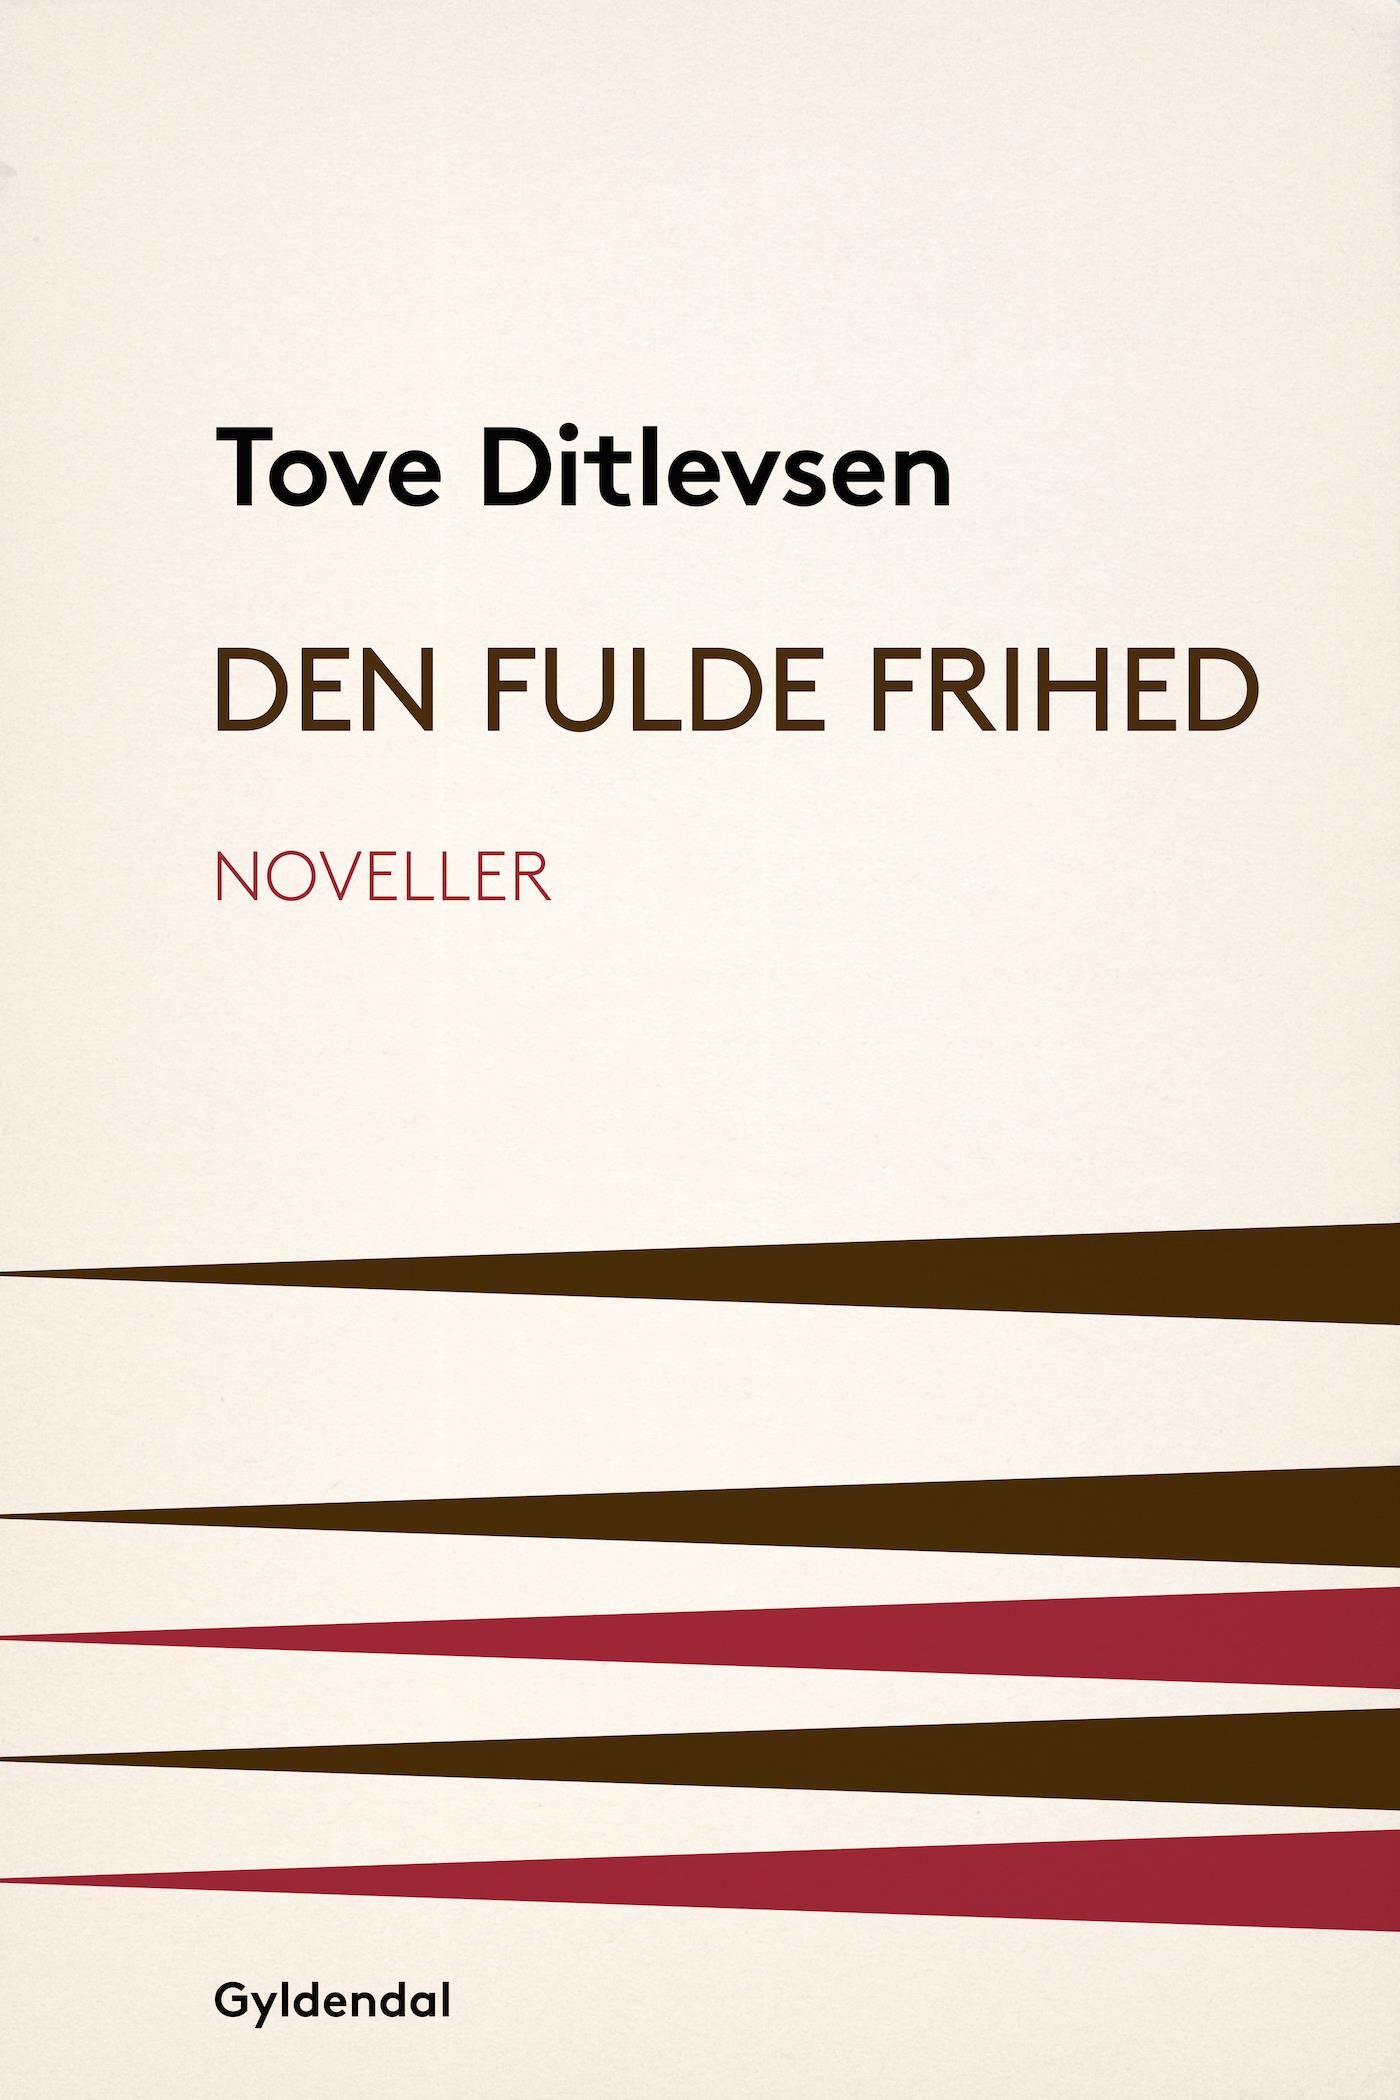 Den fulde frihed, e-bog af Tove Ditlevsen